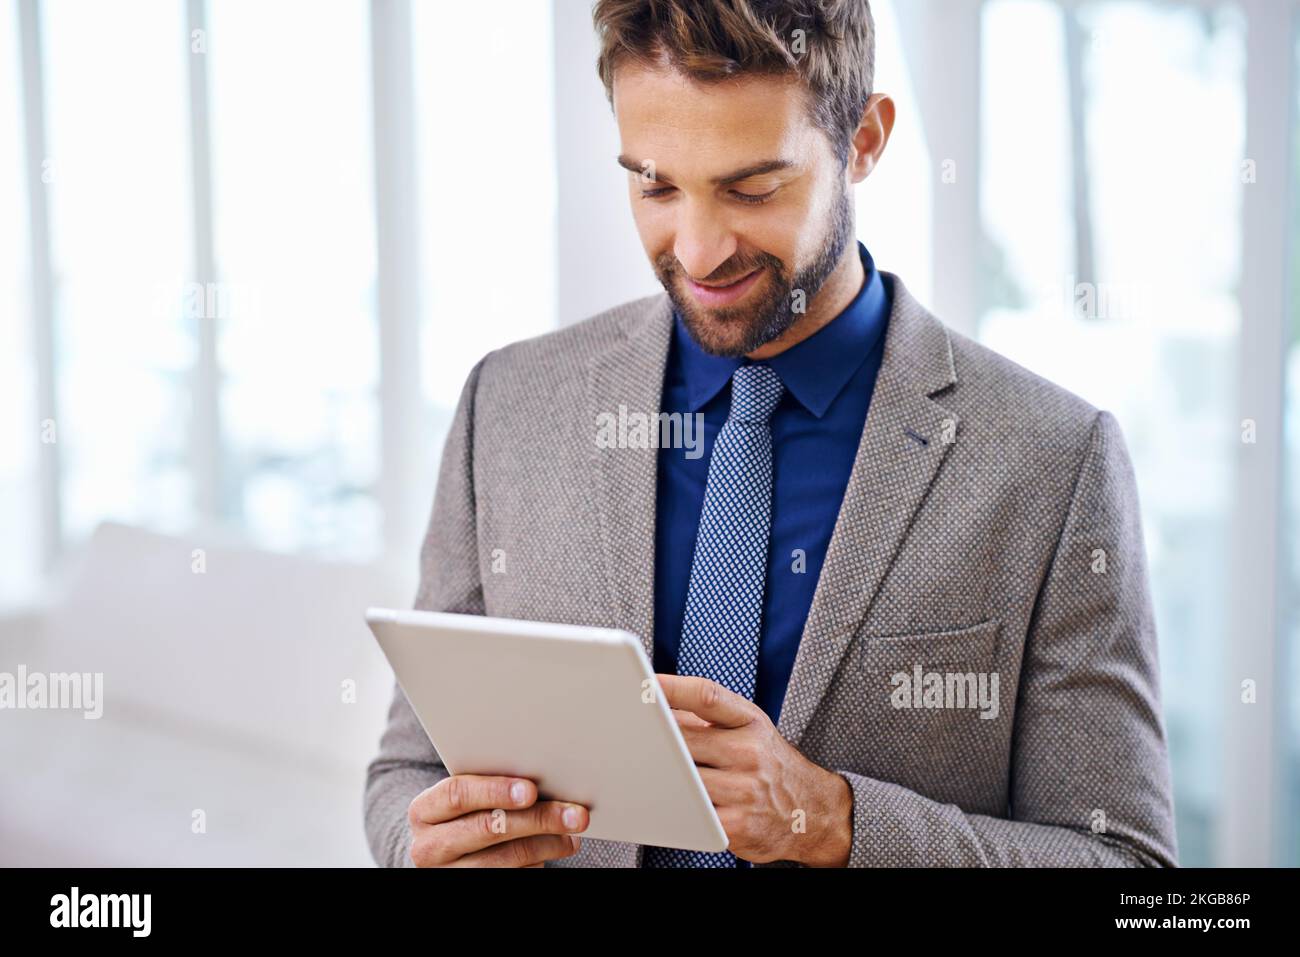 Estremamente facile da usare. Uomo con un abito contemporaneo che tiene un tablet. Foto Stock